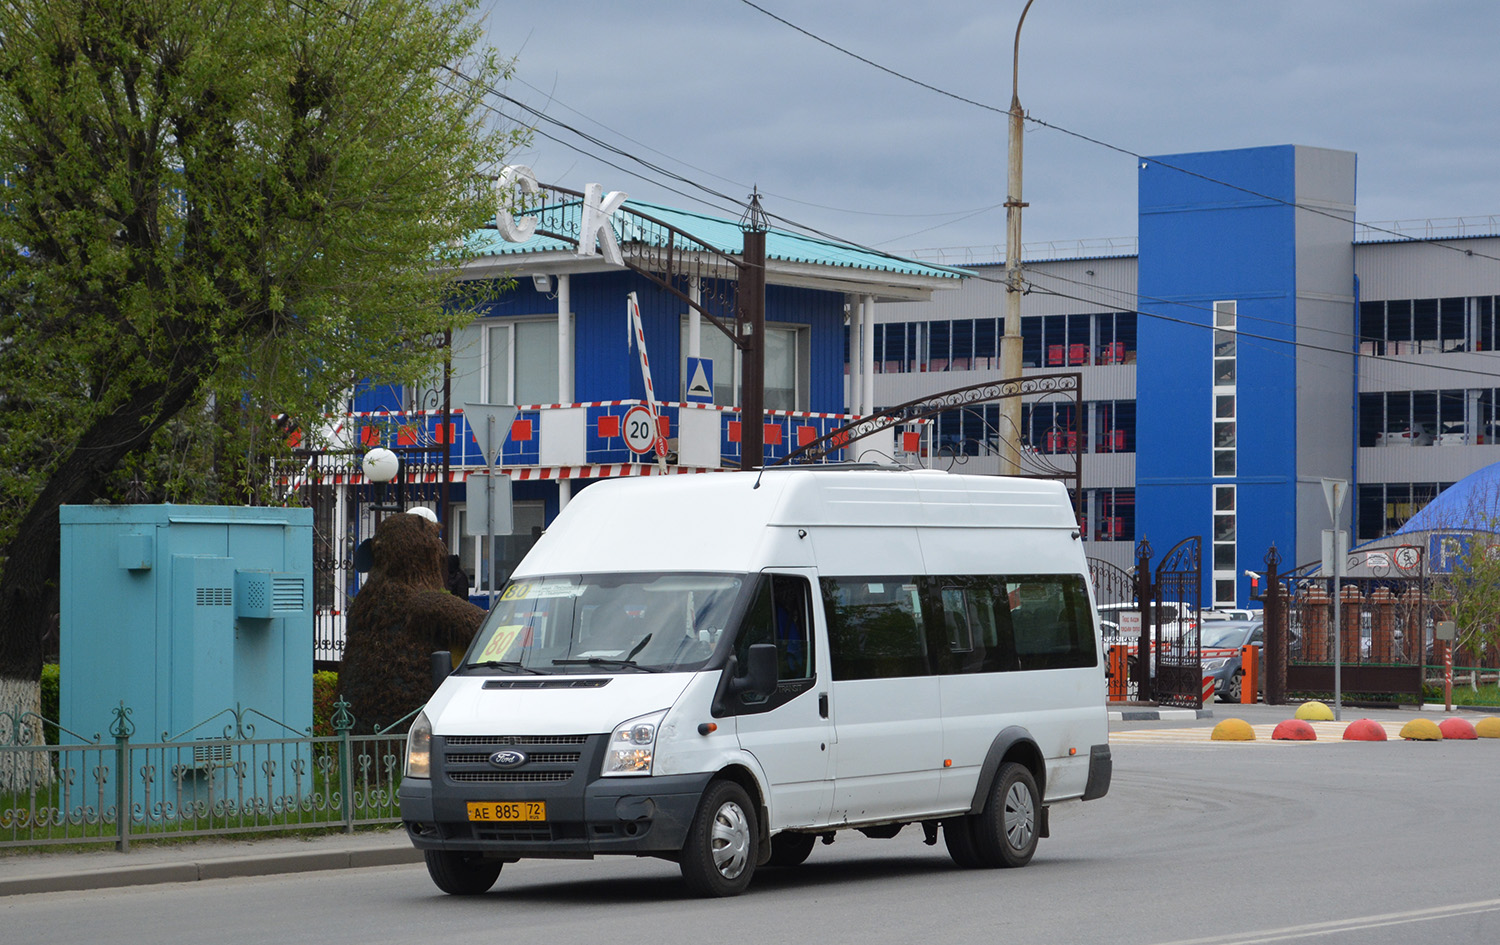 Тюменская область, Ford Transit [RUS] (Z6F.ESF.) № АЕ 885 72